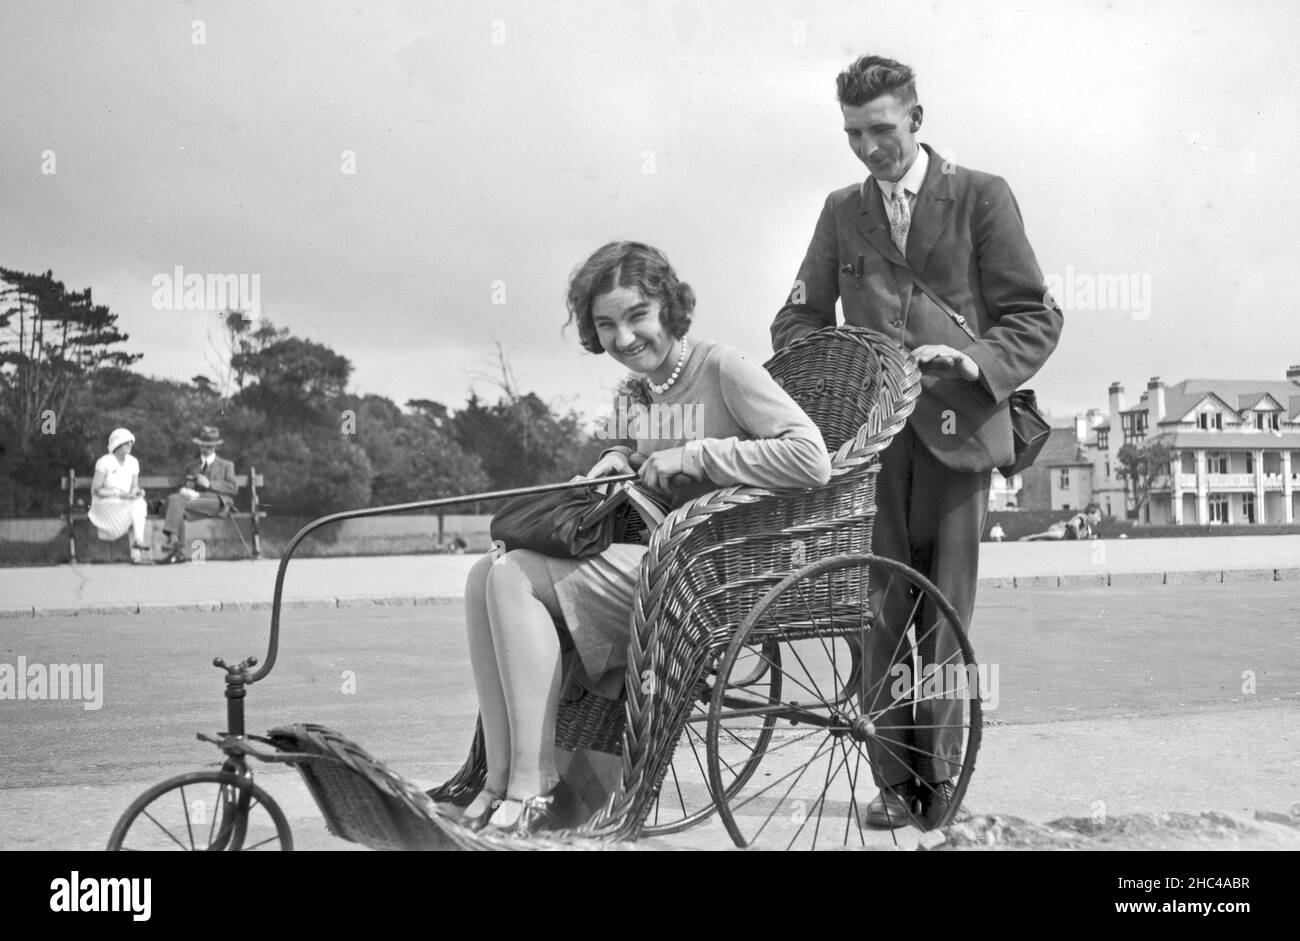 Beaucoup de pousseuses assis dans un panier invalide fauteuil roulant sur le front de mer, Isle of Wight 1920s Royaume-Uni Banque D'Images